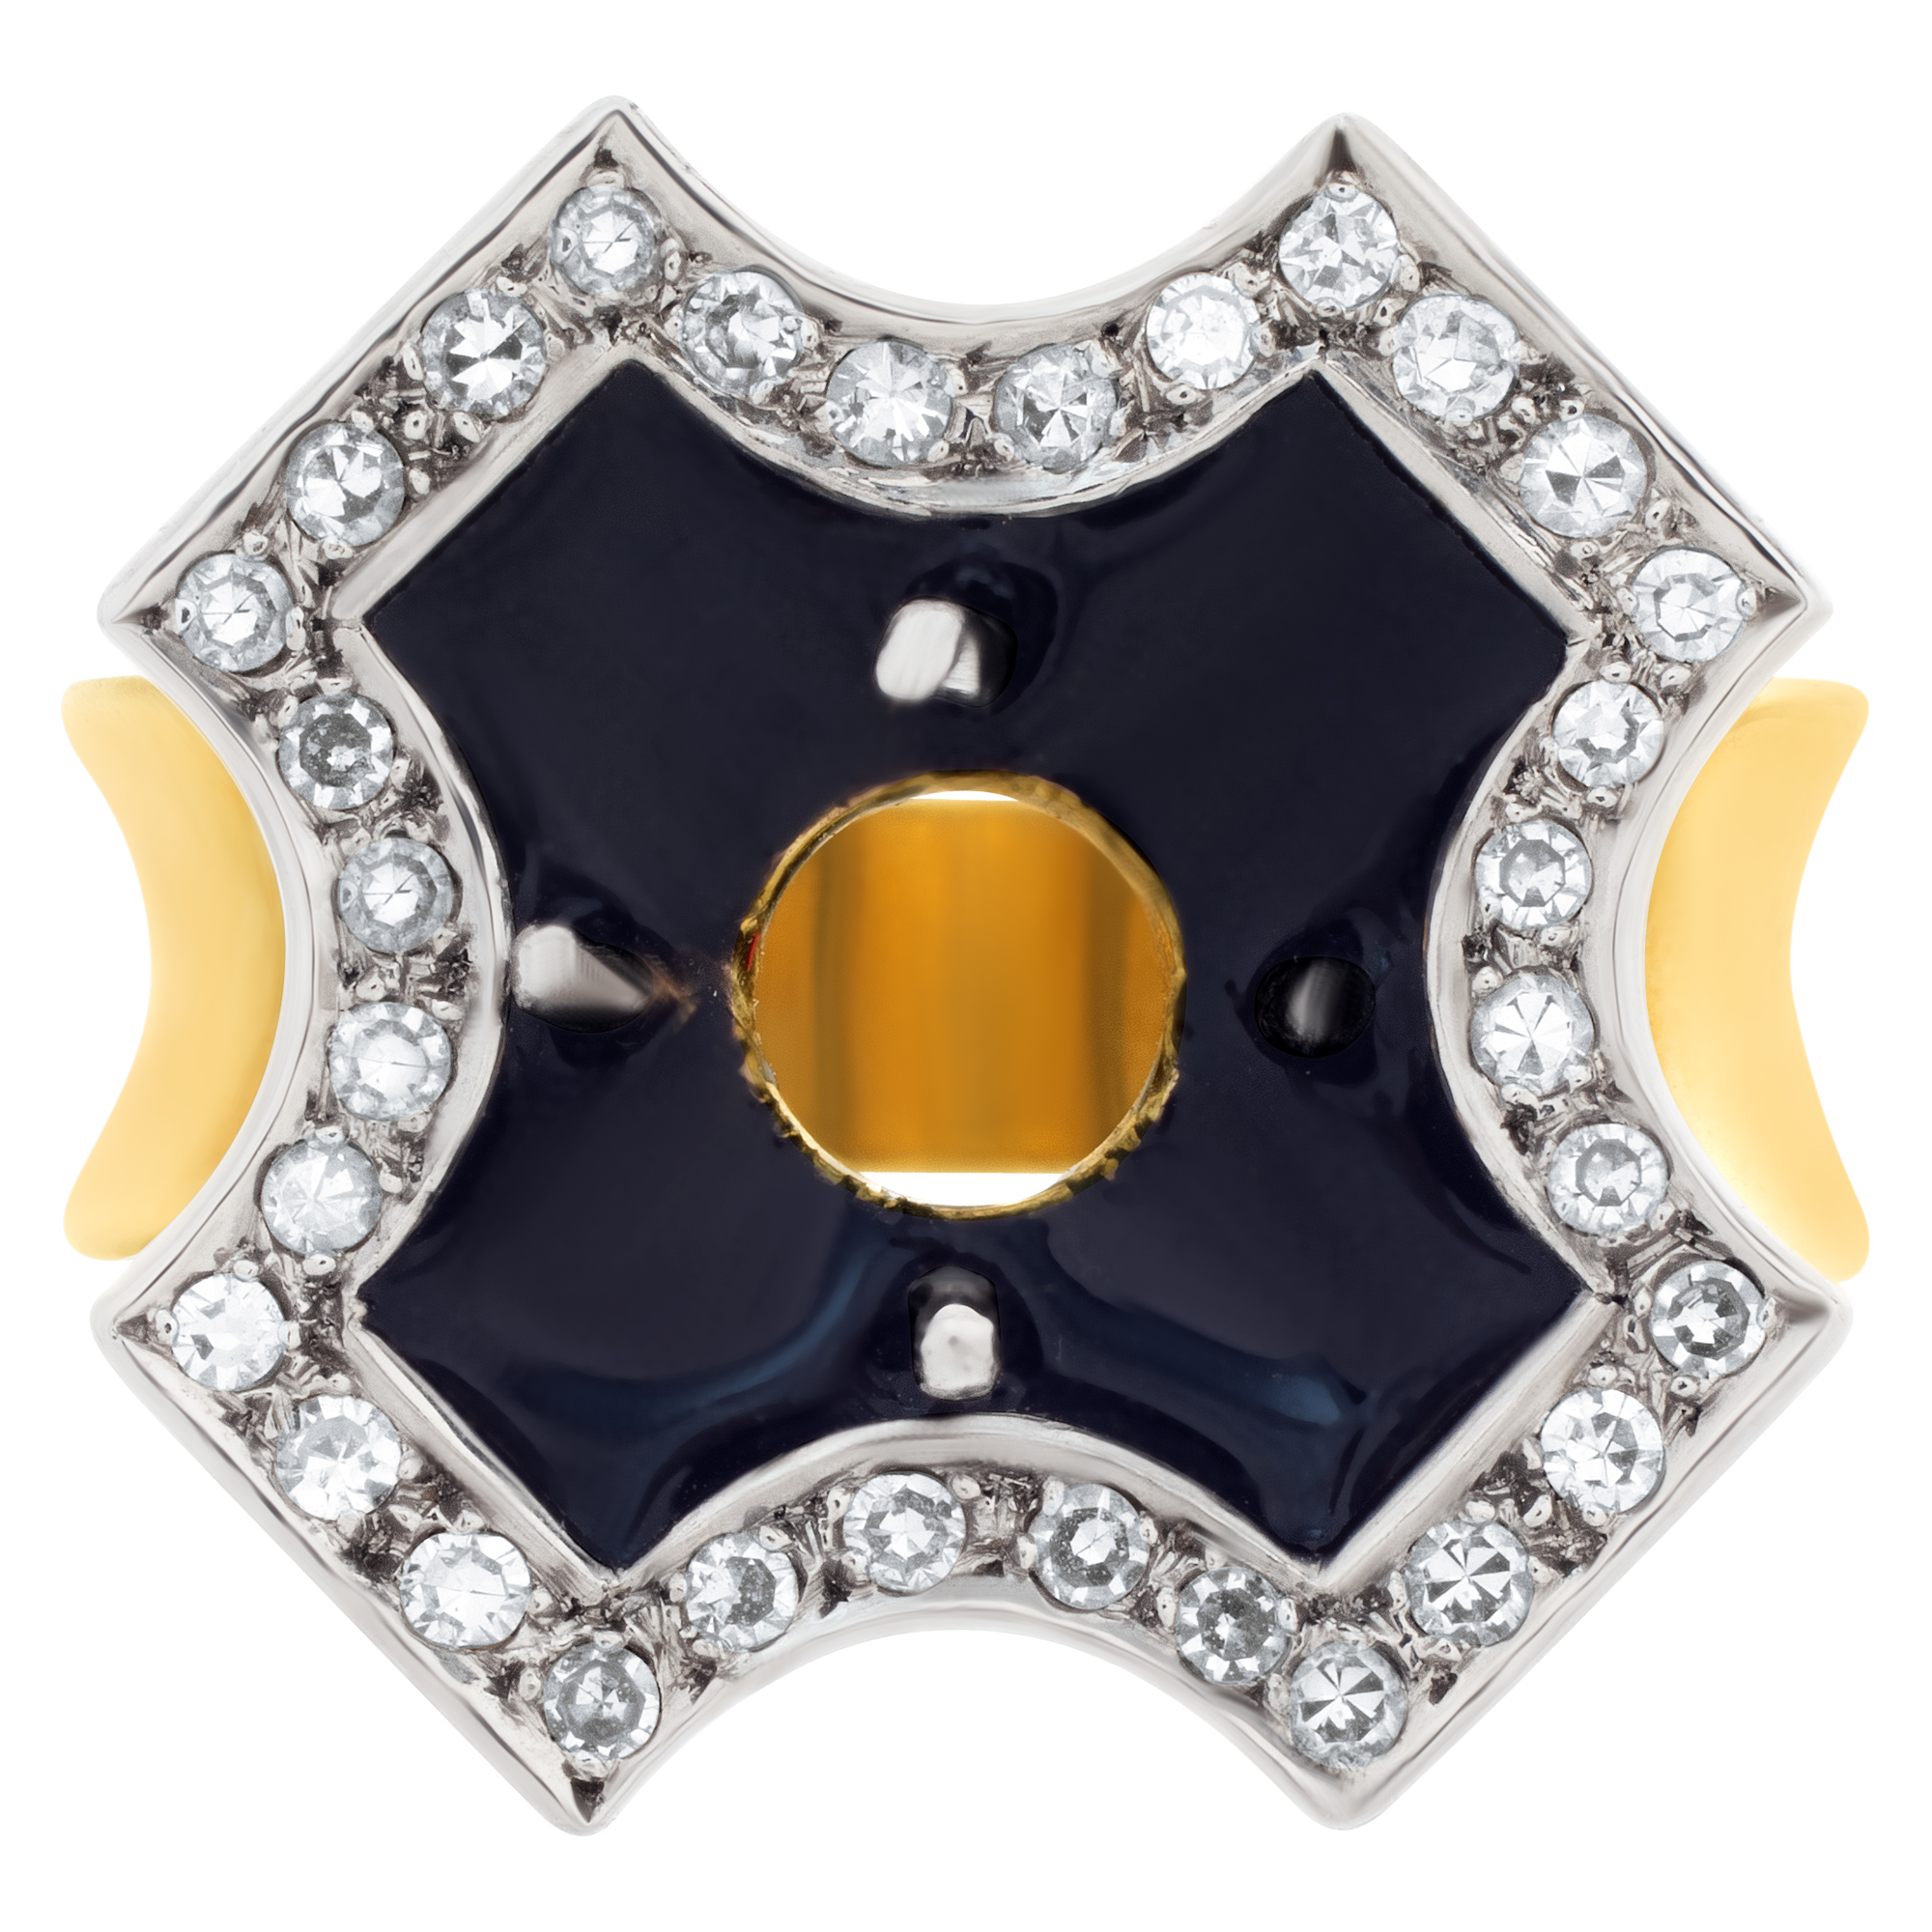 Black enamel Maltese cross design setting in 18k with 0.50 carats in diamonds image 2